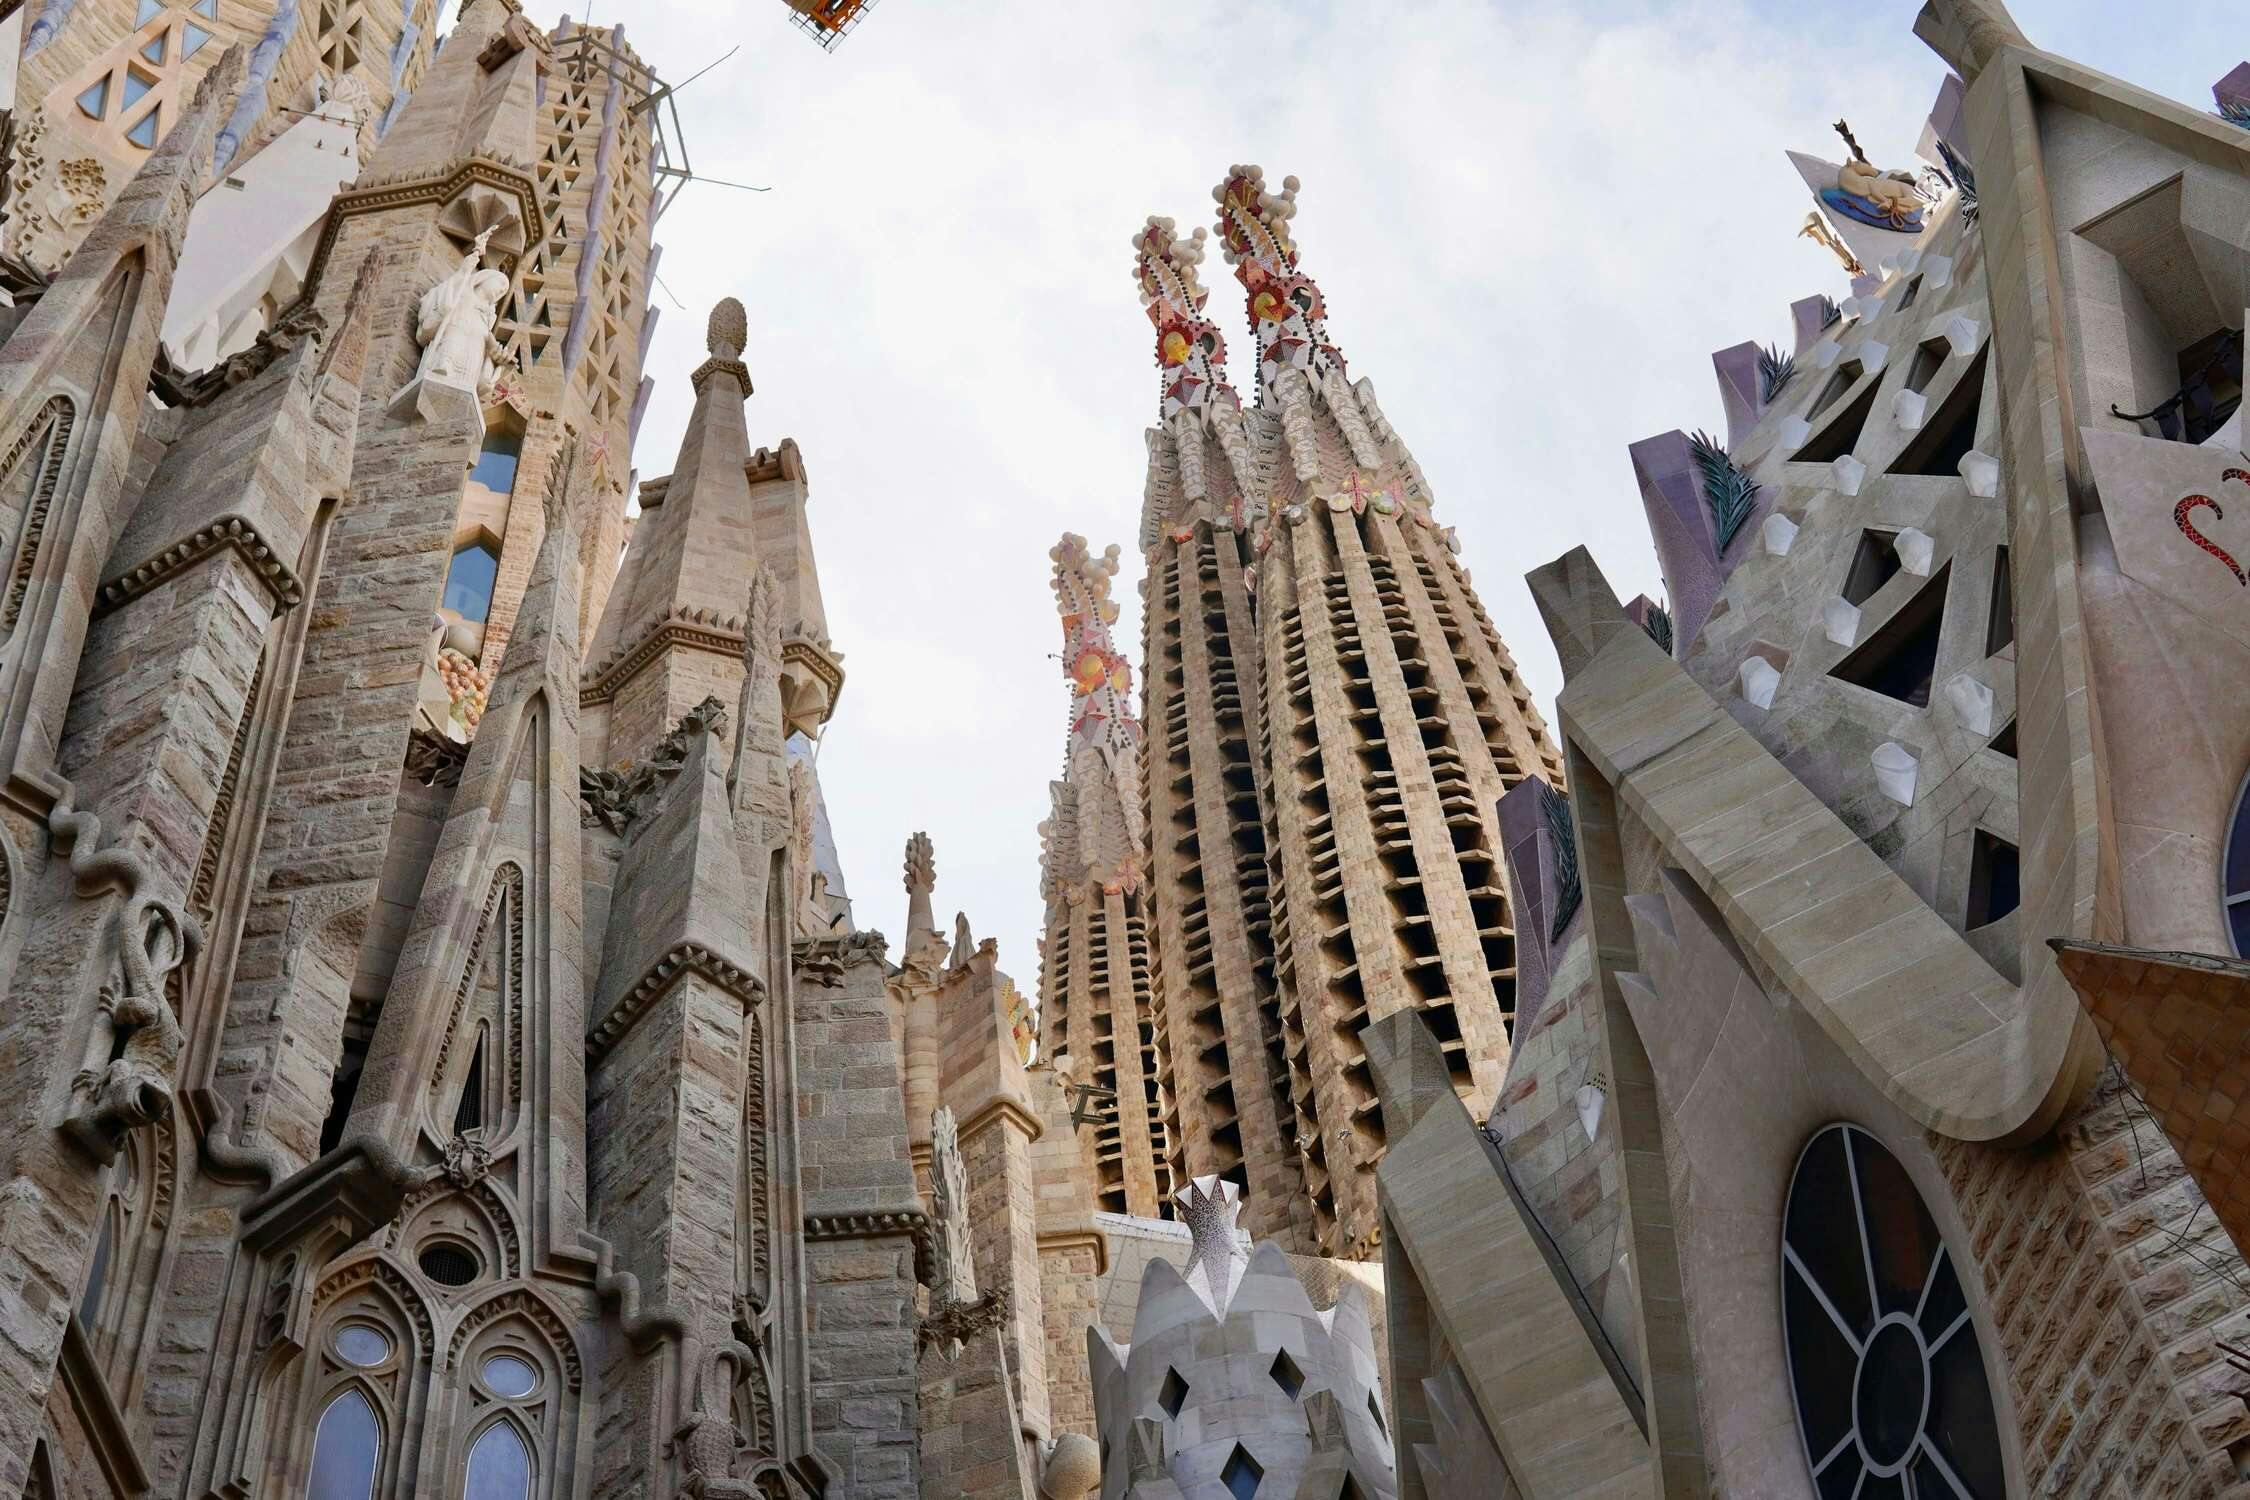 A close up shot of some of the spires of La Sagrada Família